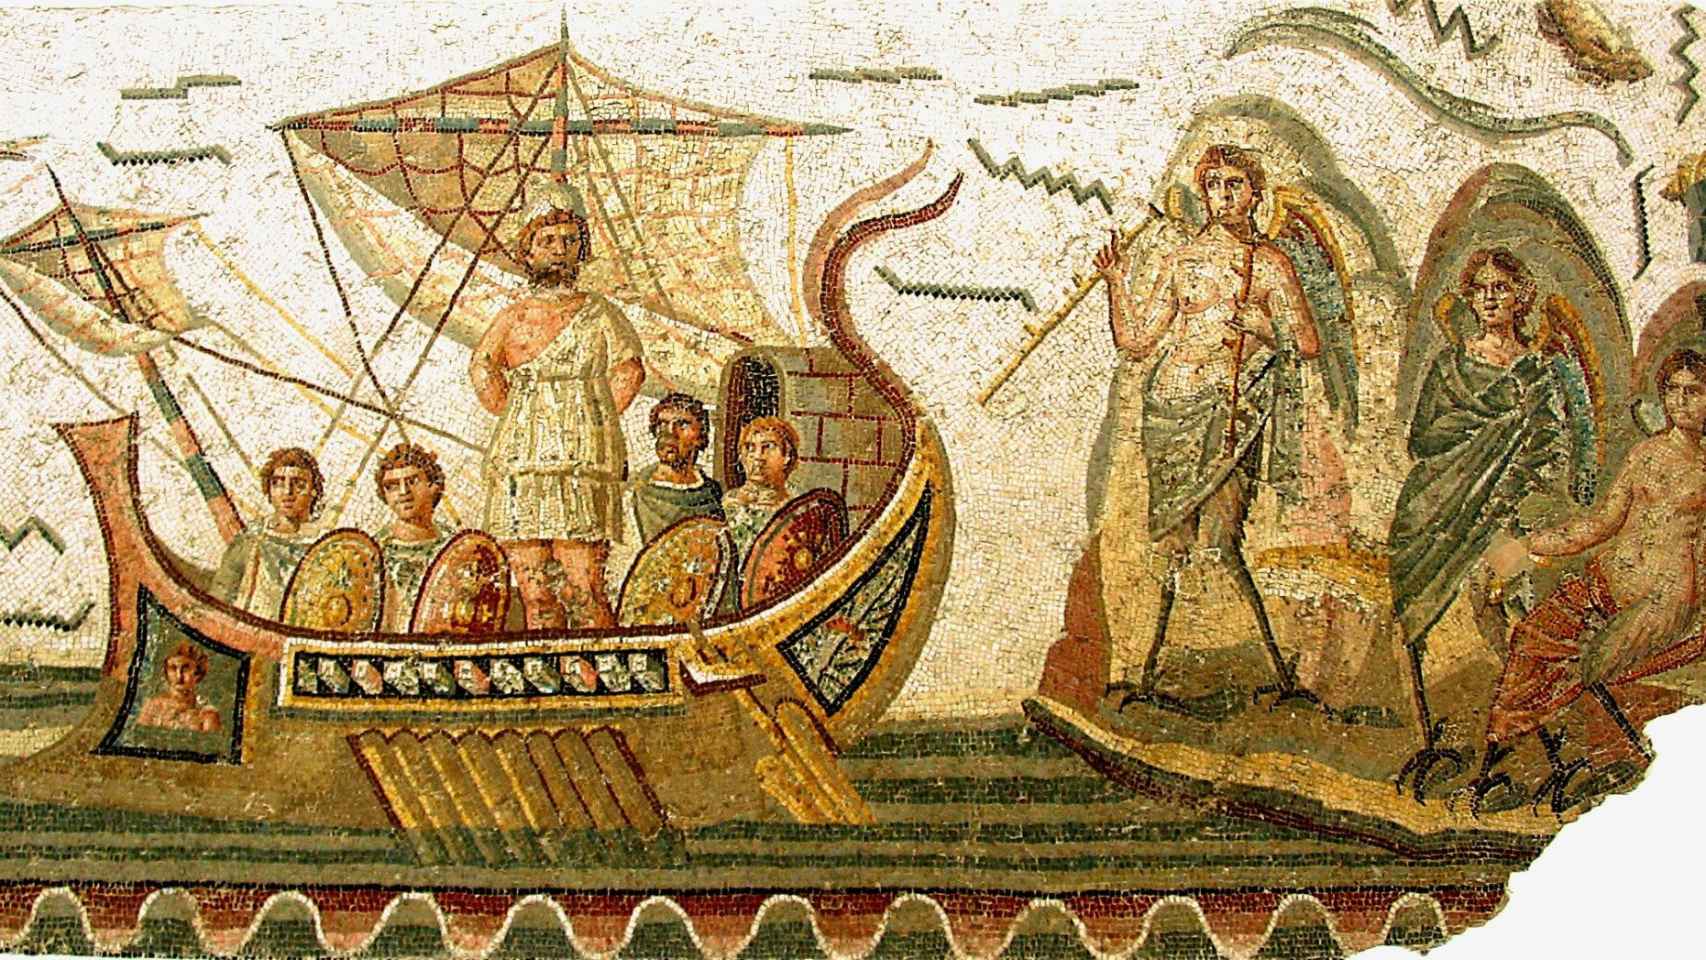 Mosaico de Odiseo y las Sirenas. Túnez, siglo II DC. García Gual lo recomienda